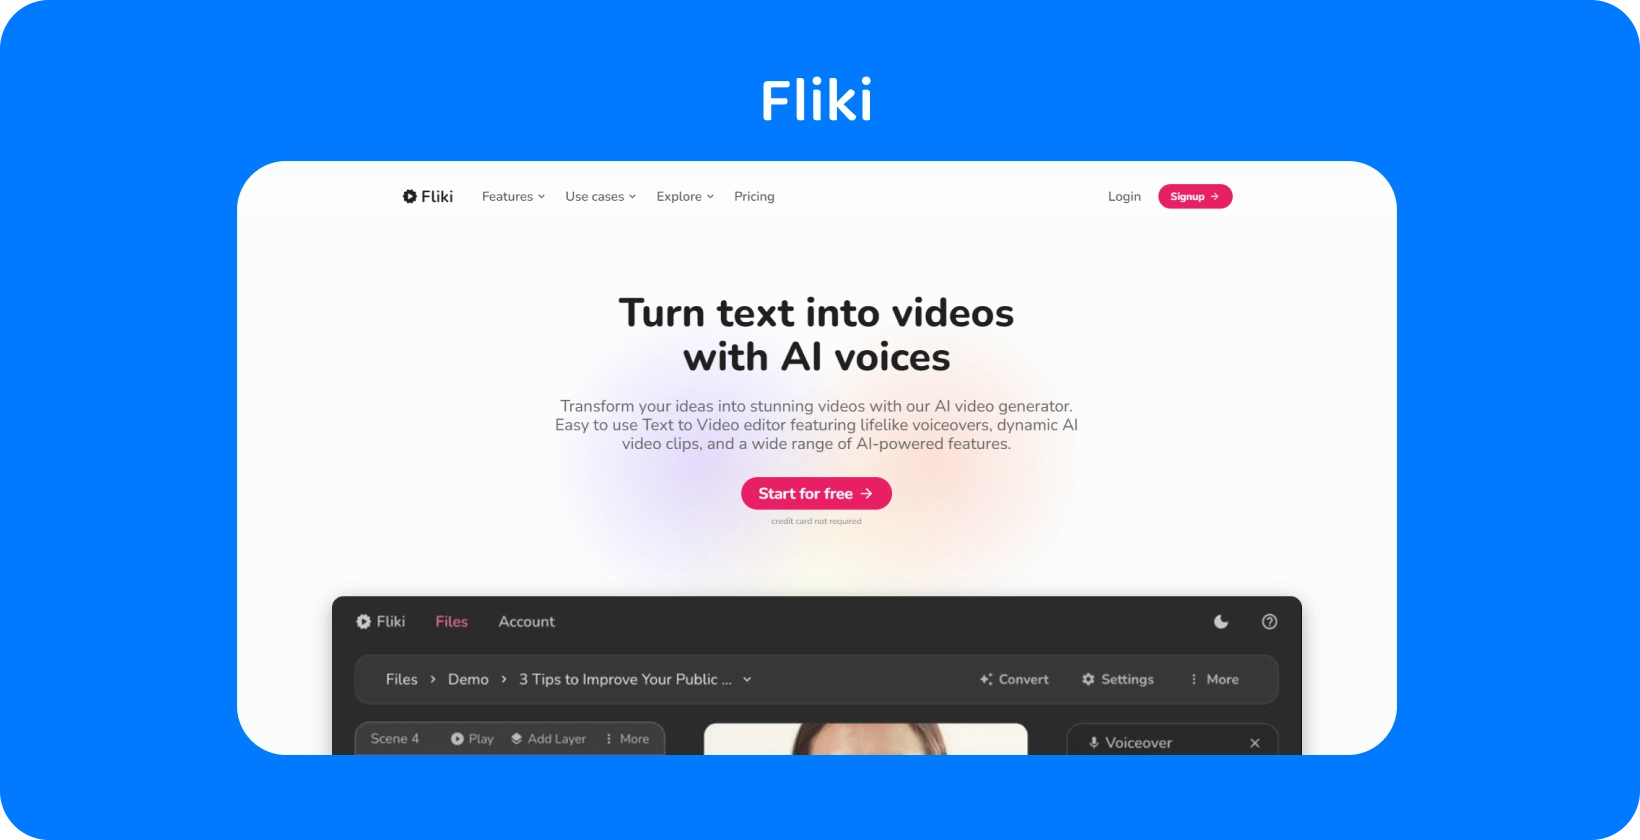 Flikiのプラットフォームページでは、AI音声を使用してテキストをビデオに変換し、テキストからビデオへの編集エクスペリエンスを提供する方法を示しています。